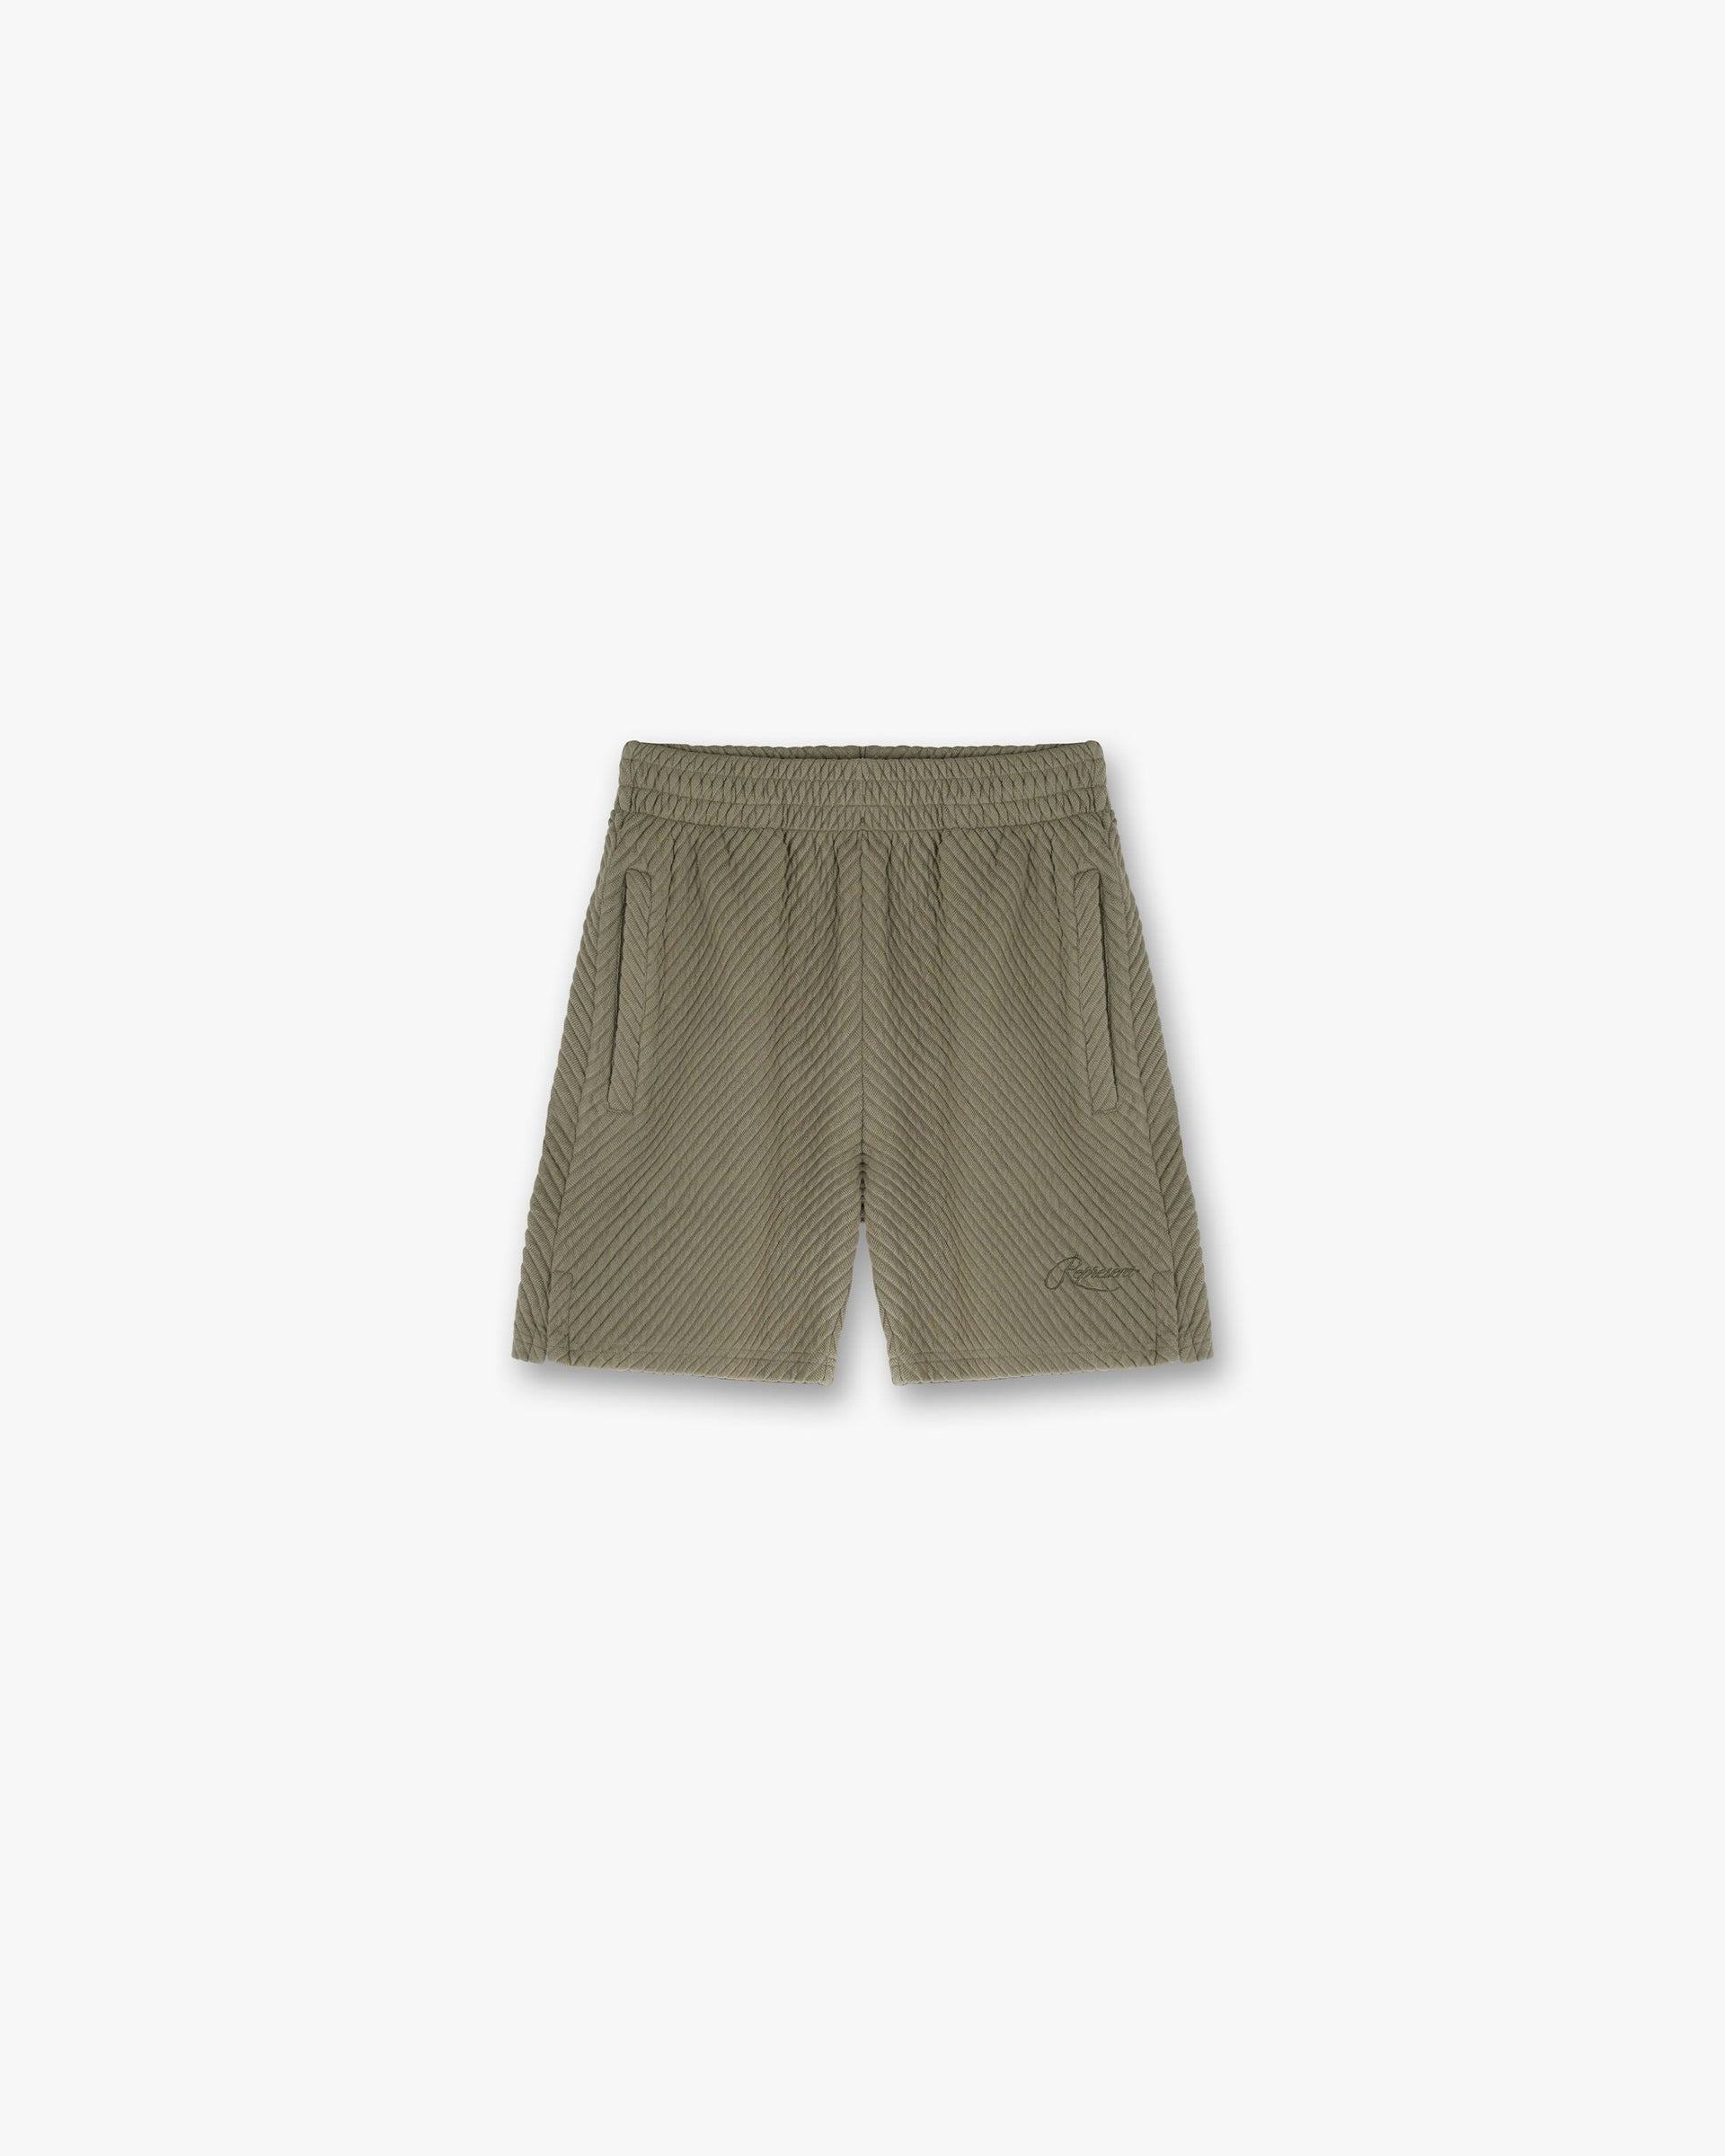 Ottoman Shorts | Khaki Shorts SC23 | Represent Clo